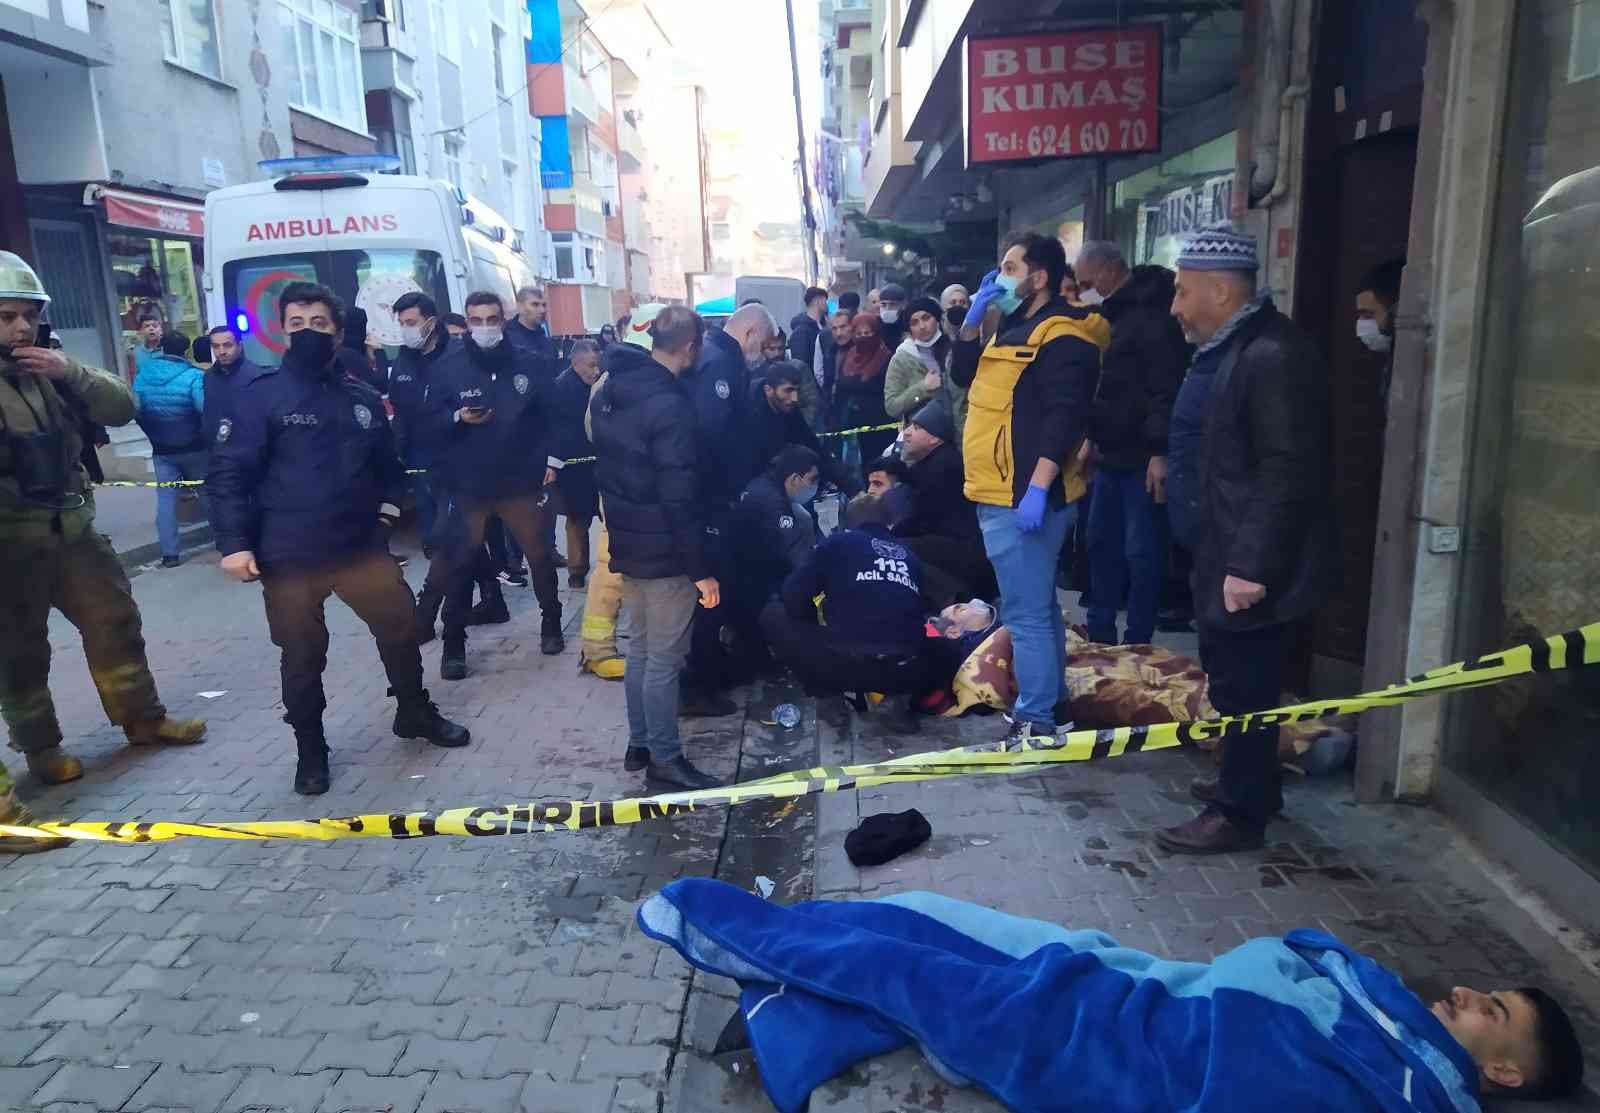 Küçükçekmece’de aynı aileden 5 kişi doğal gazdan zehirlendi #istanbul